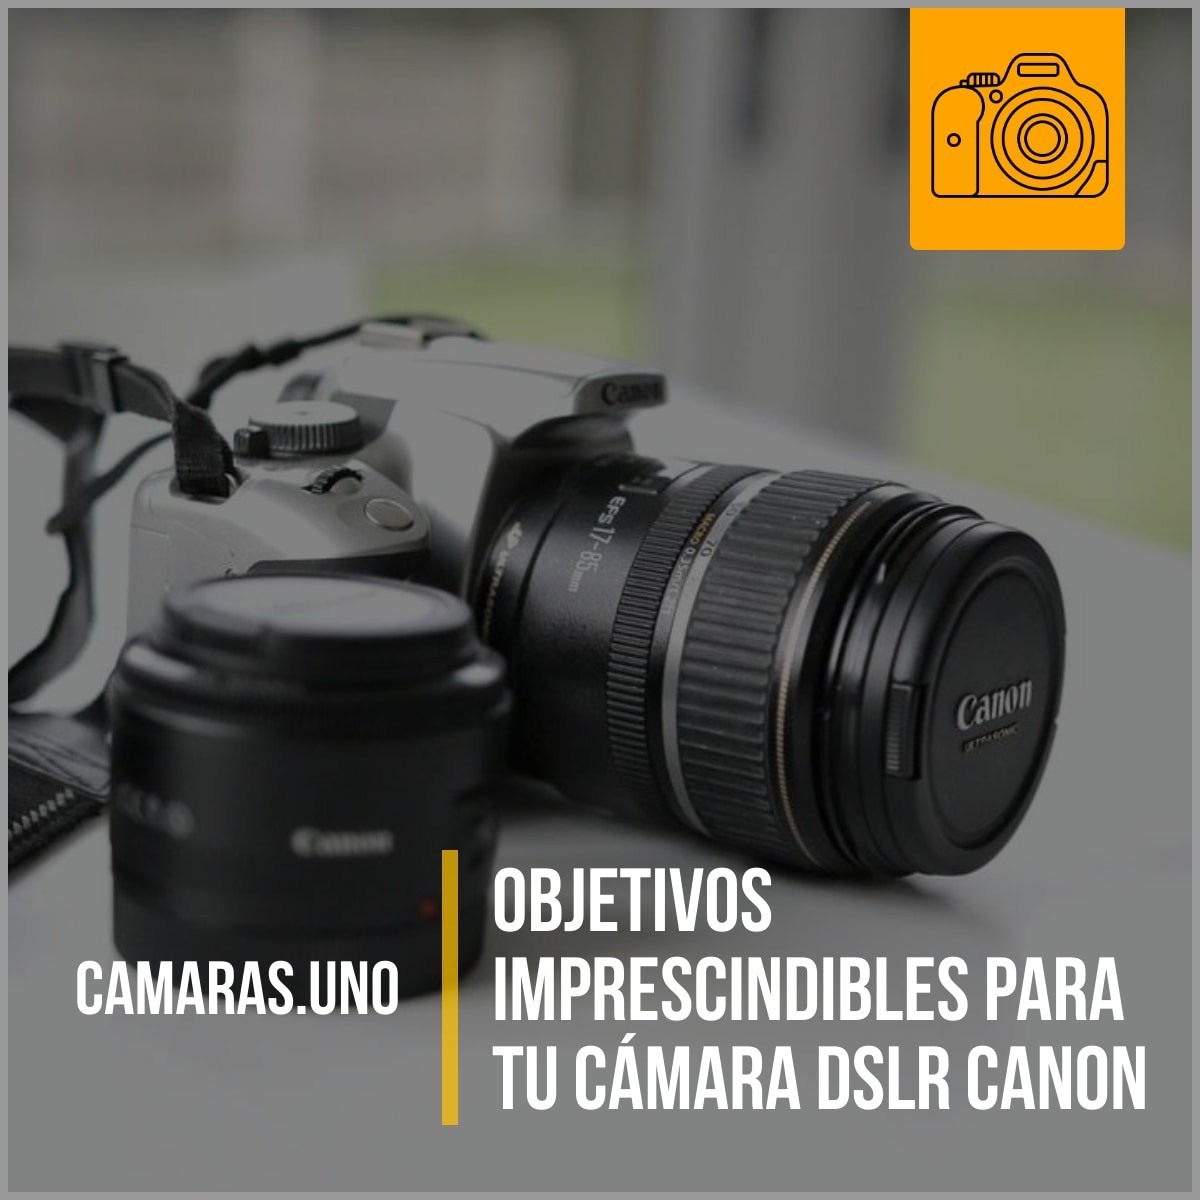 Objetivos imprescindibles para tu DSLR Canon que debes comprar